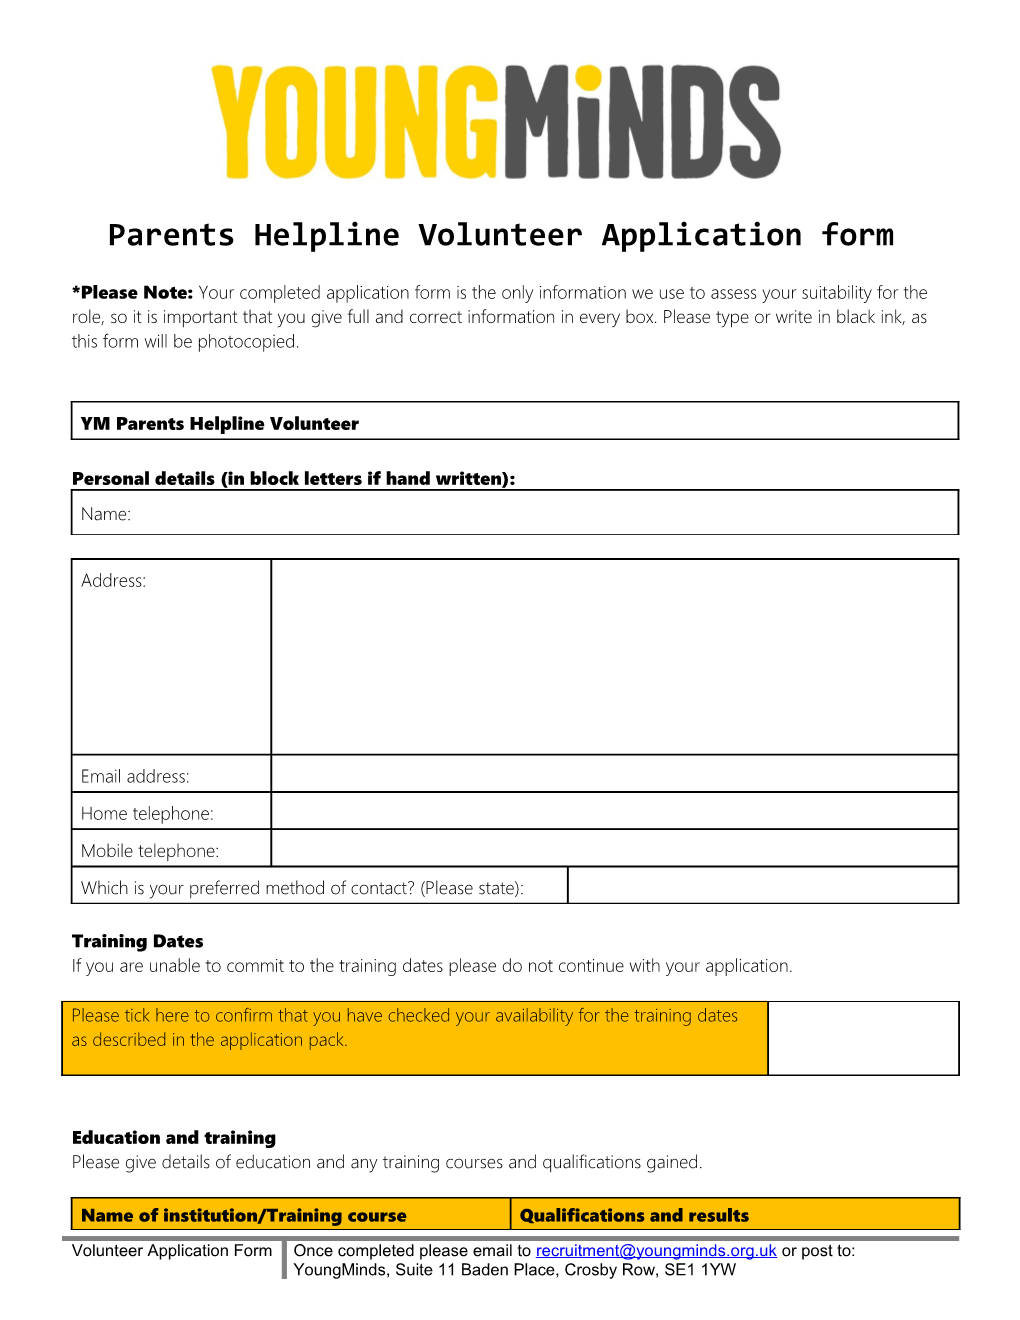 Parents Helpline Volunteer Application Form